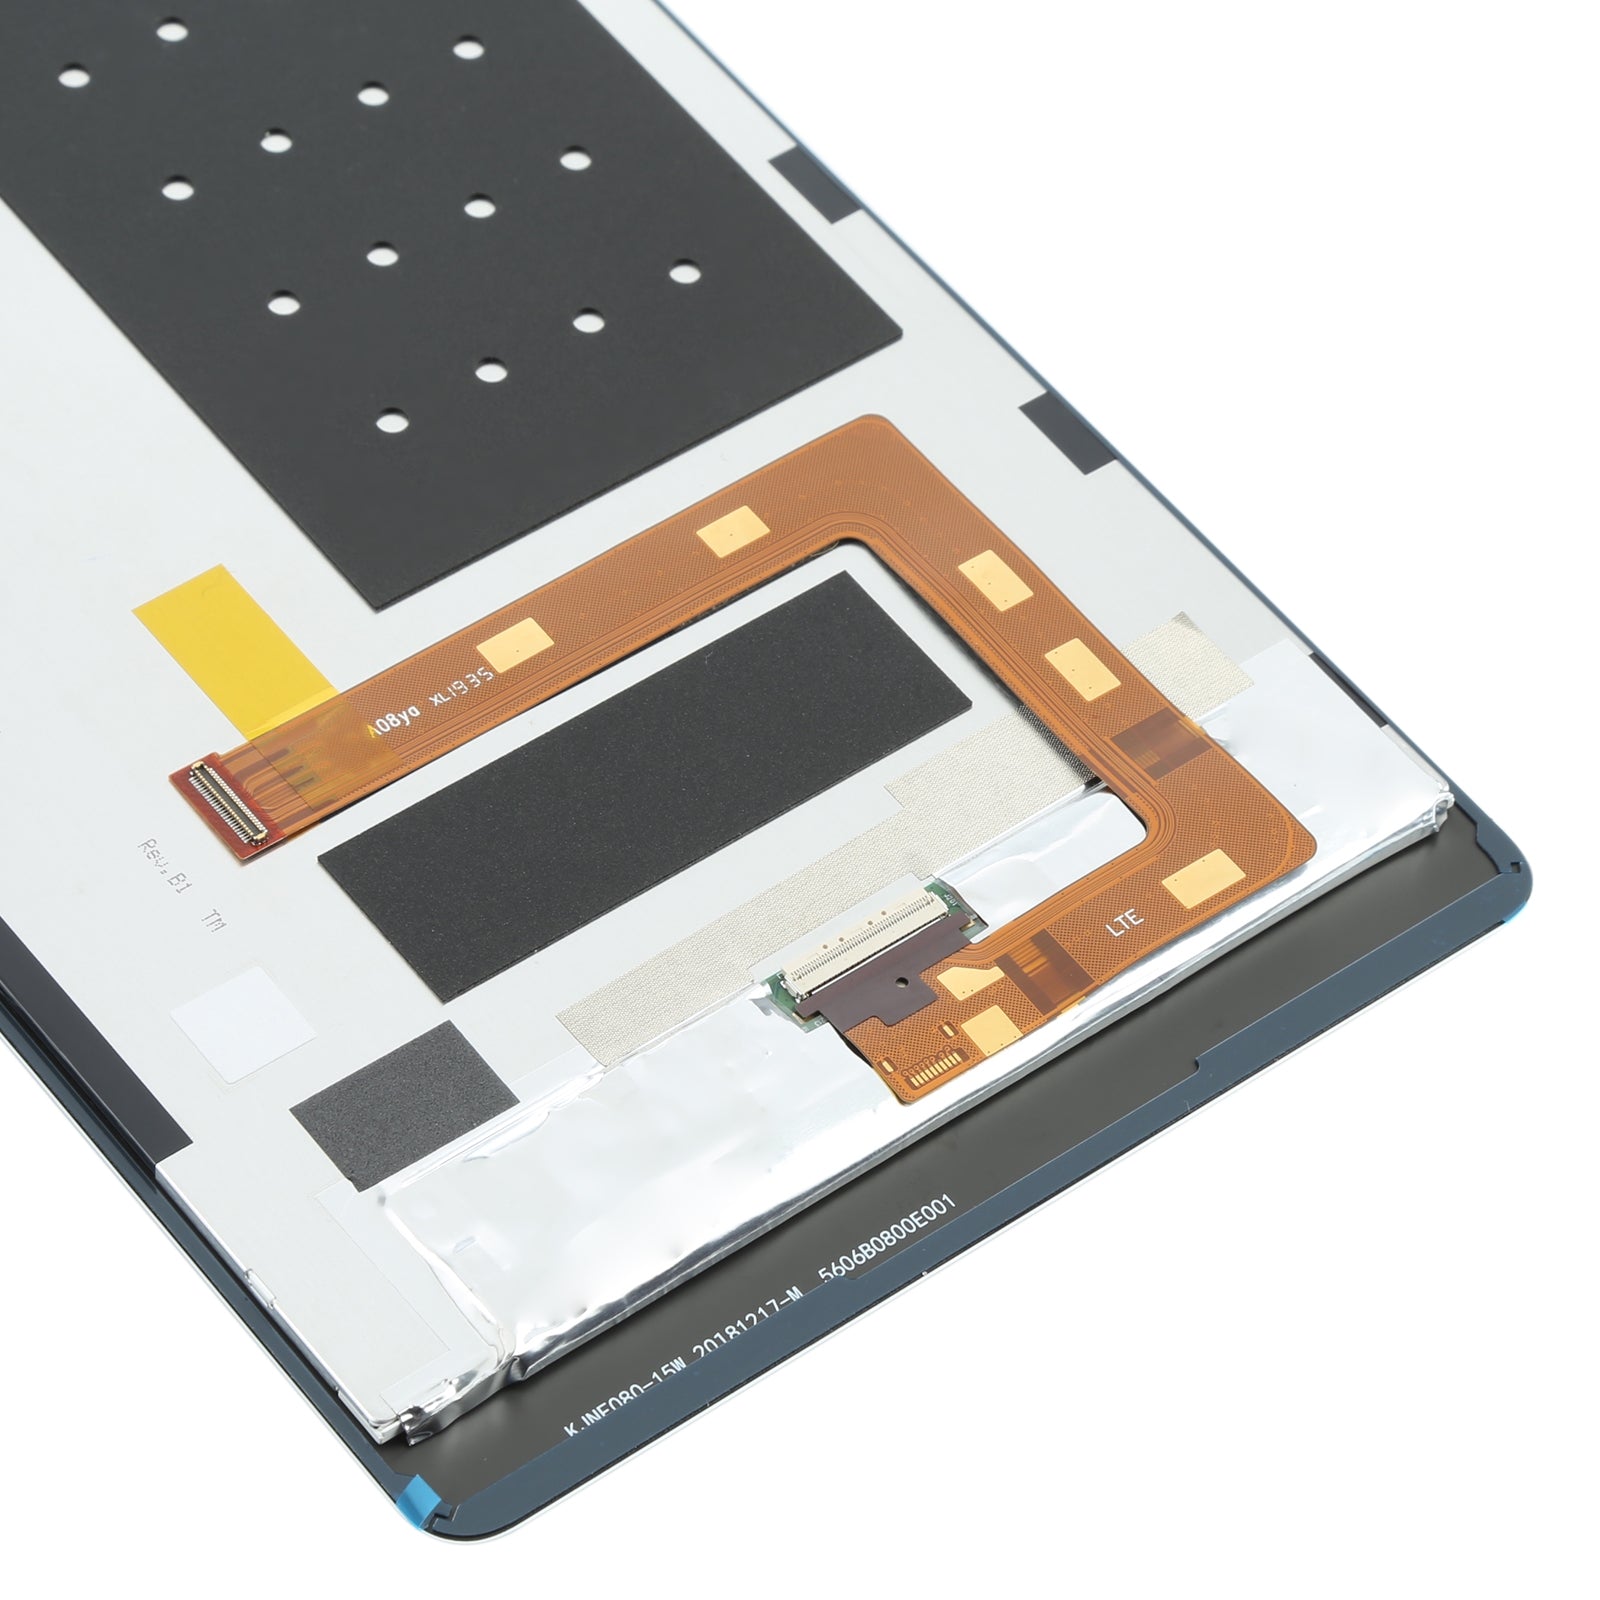 Pantalla LCD + Tactil Digitalizador Huawei C5 MON-AL19B Blanco